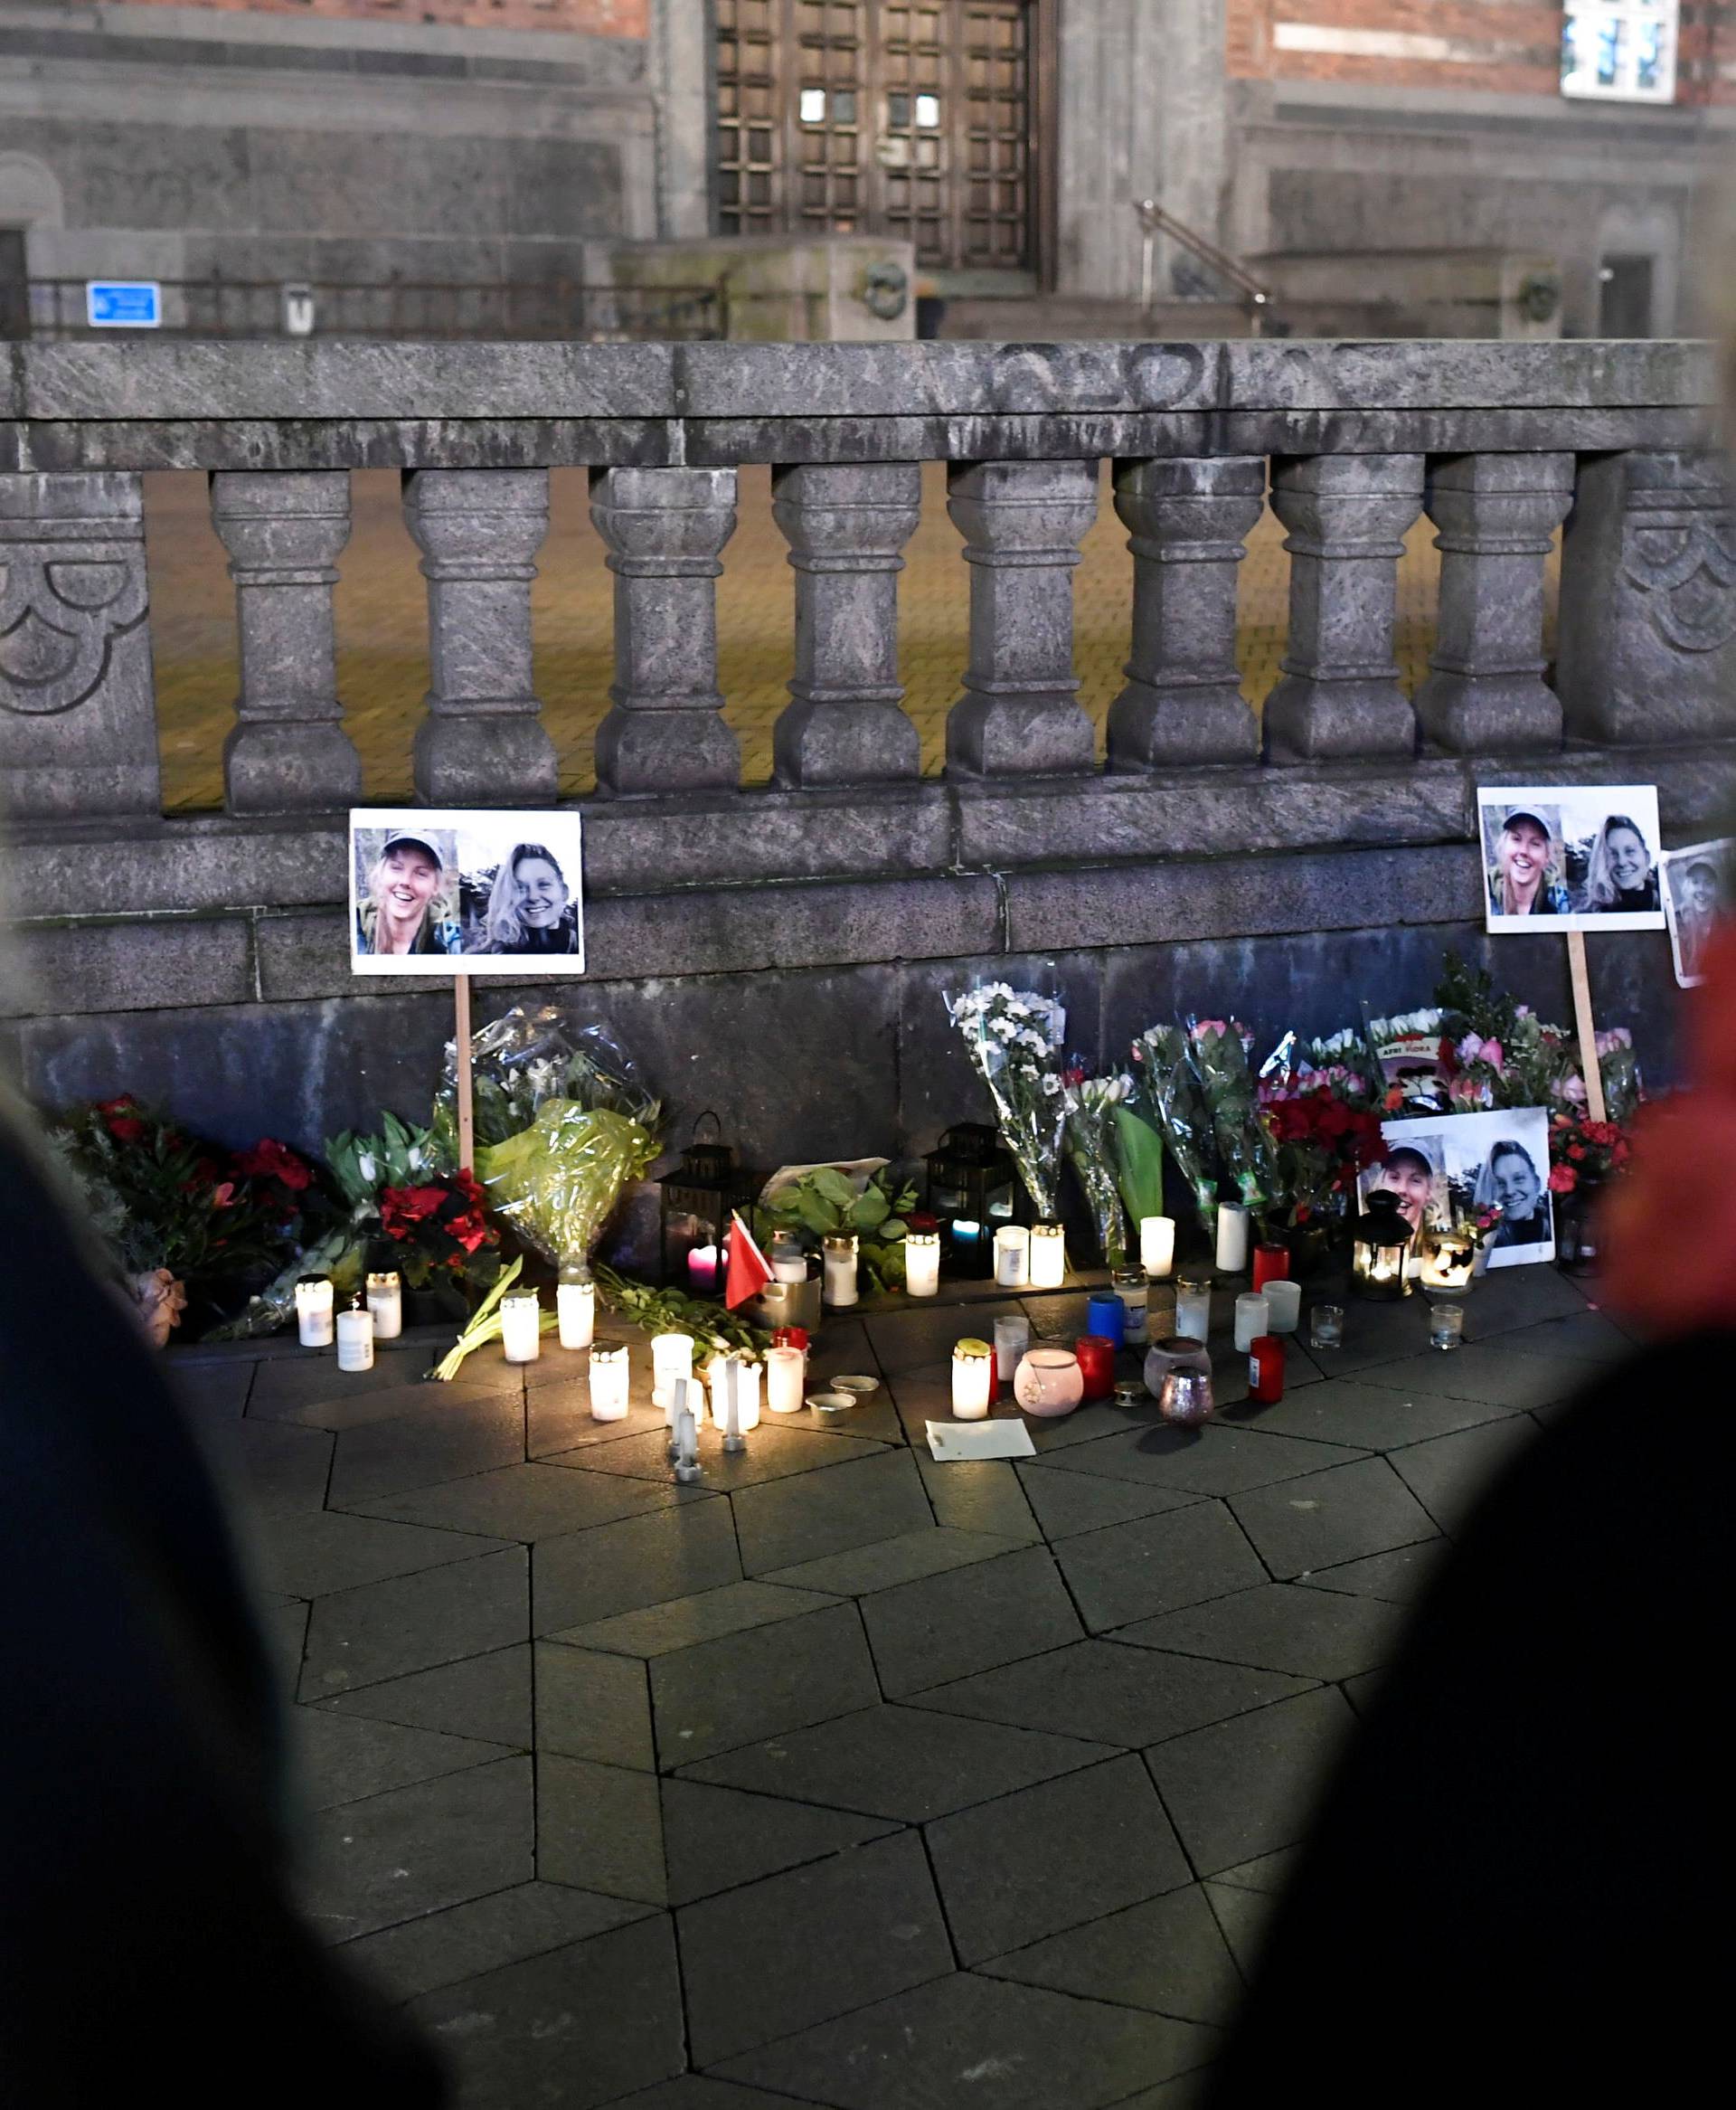 People bring flowers and light candles in memory of Louisa Vesterager Jespersen and Maren Ueland, in Copenhagen